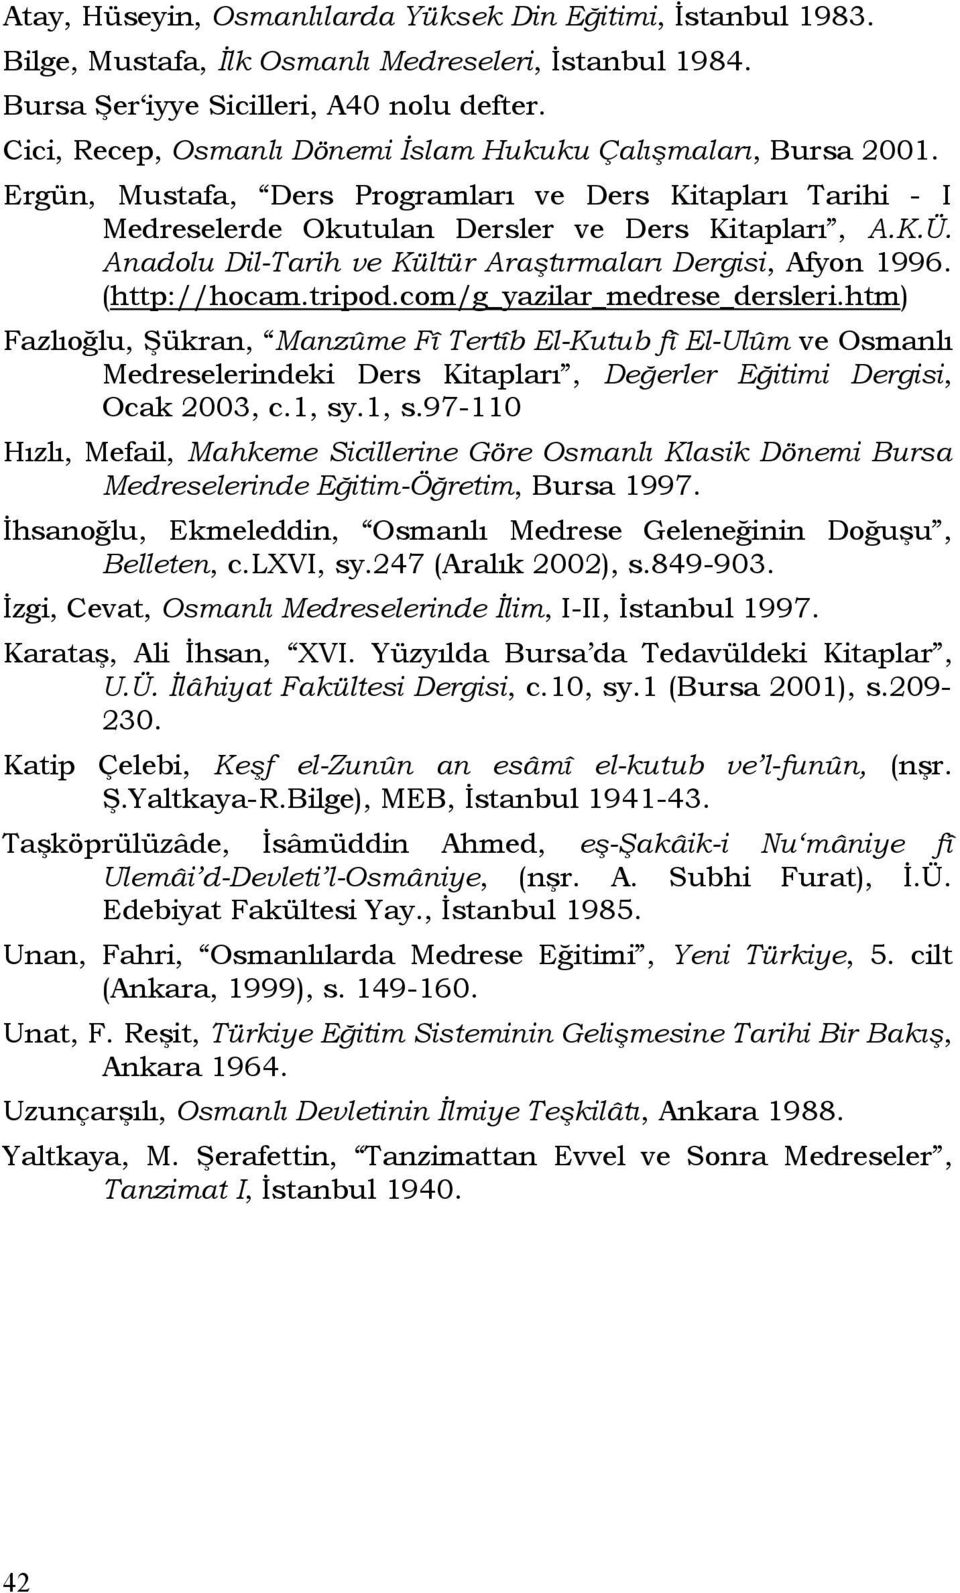 Anadolu Dil-Tarih ve Kültür Araştırmaları Dergisi, Afyon 1996. (http://hocam.tripod.com/g_yazilar_medrese_dersleri.